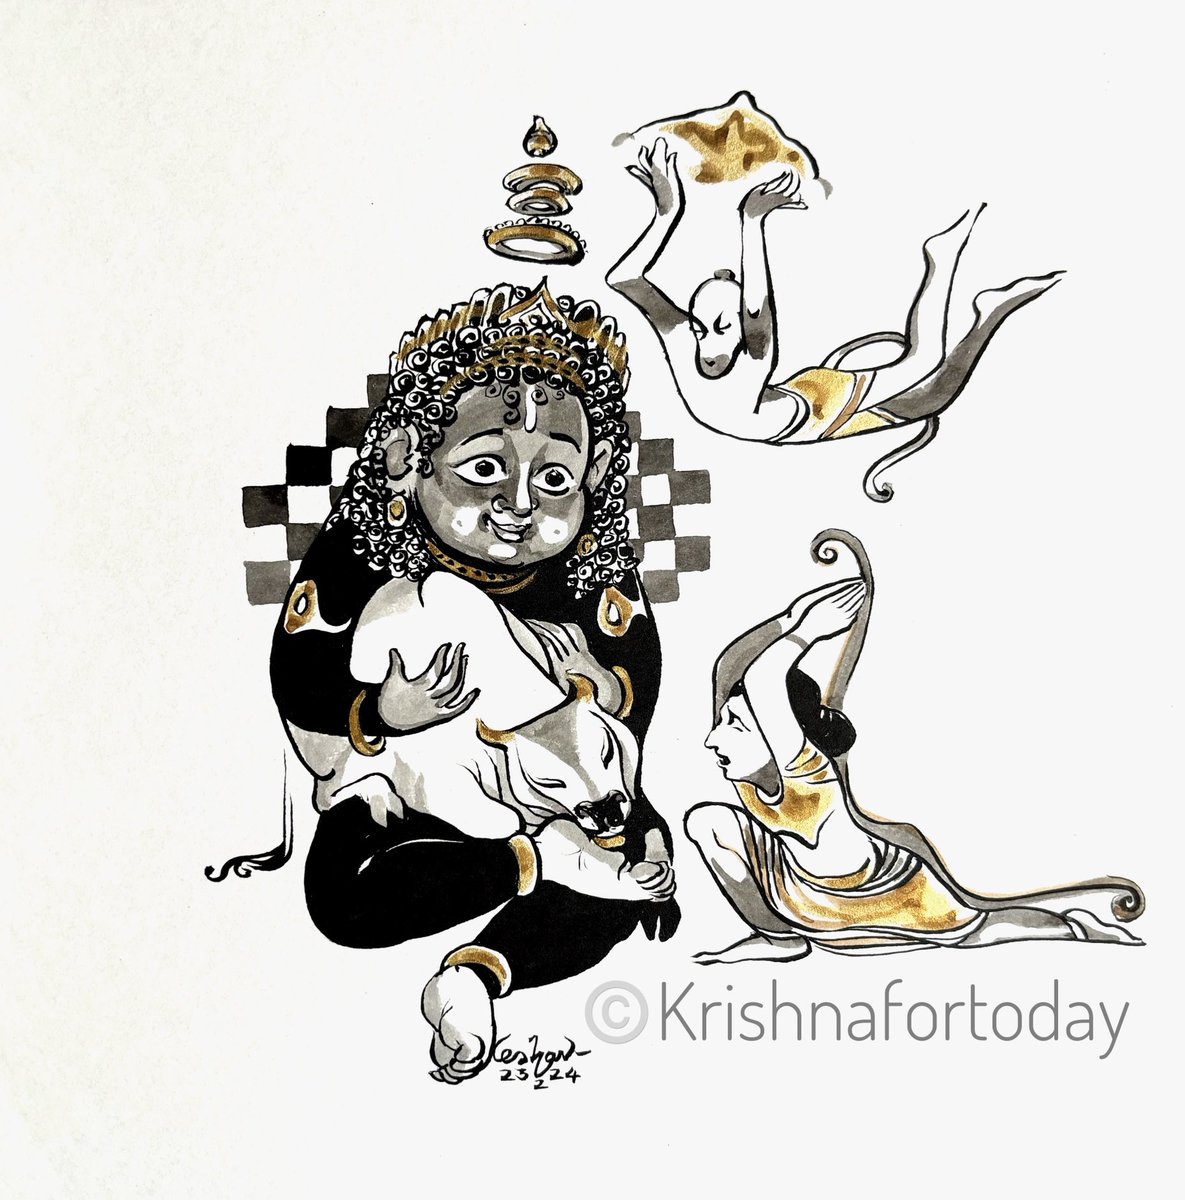 Dialogue with Arjuna #Vatsalya #Bhagavadgita #Bhakti #Bhagavatham #Watercolour #Brushpen #Krishnafortoday